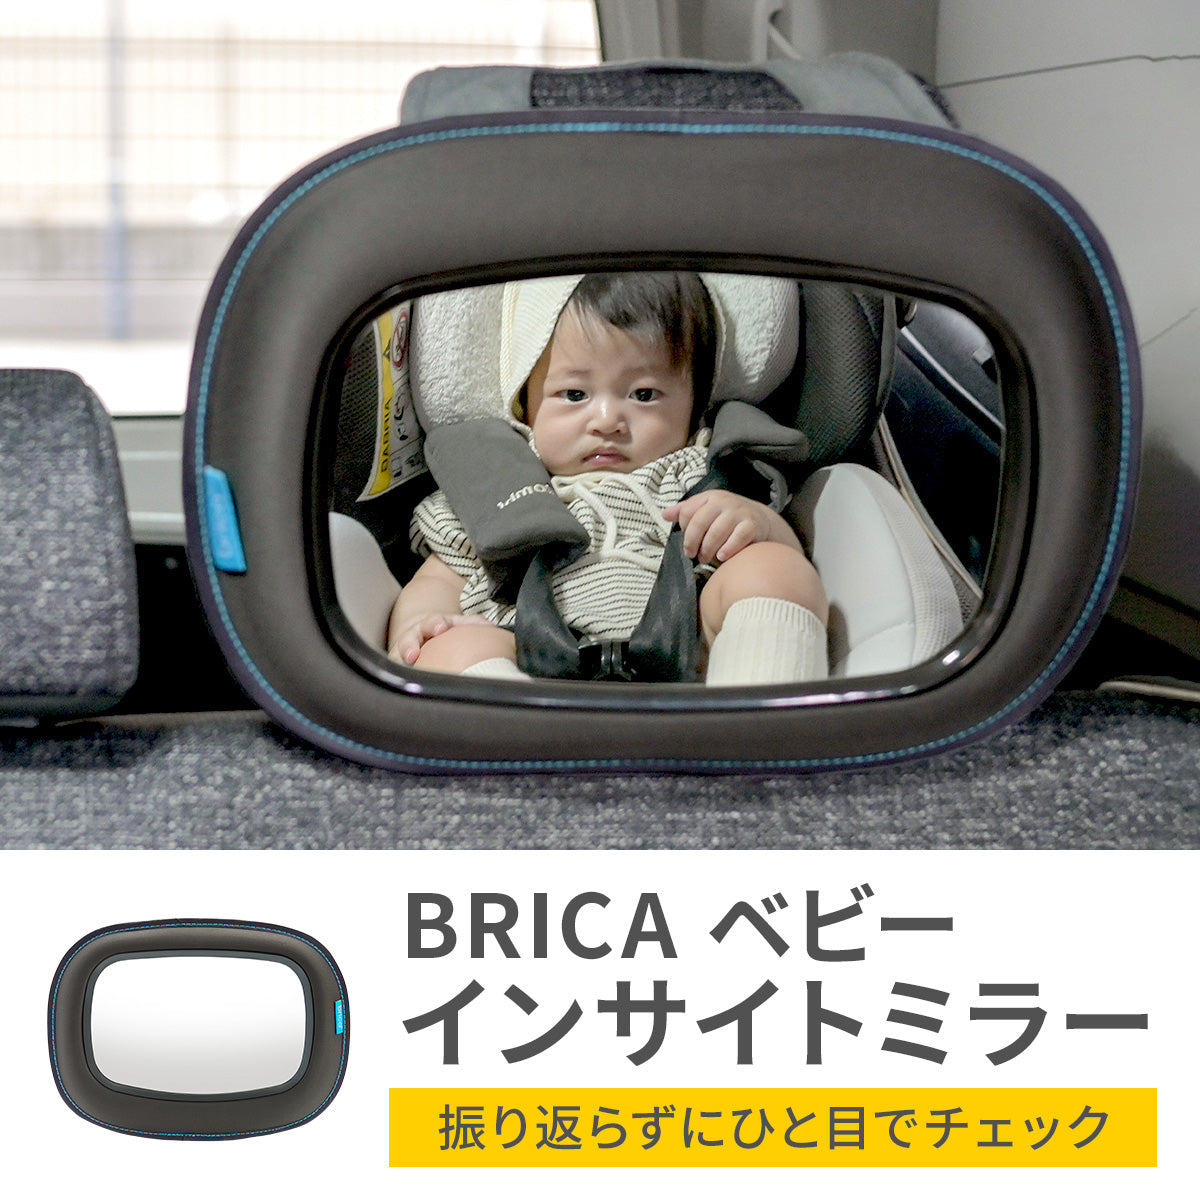 BRICA ベビー インサイトミラー【送料無料】 – Hariti